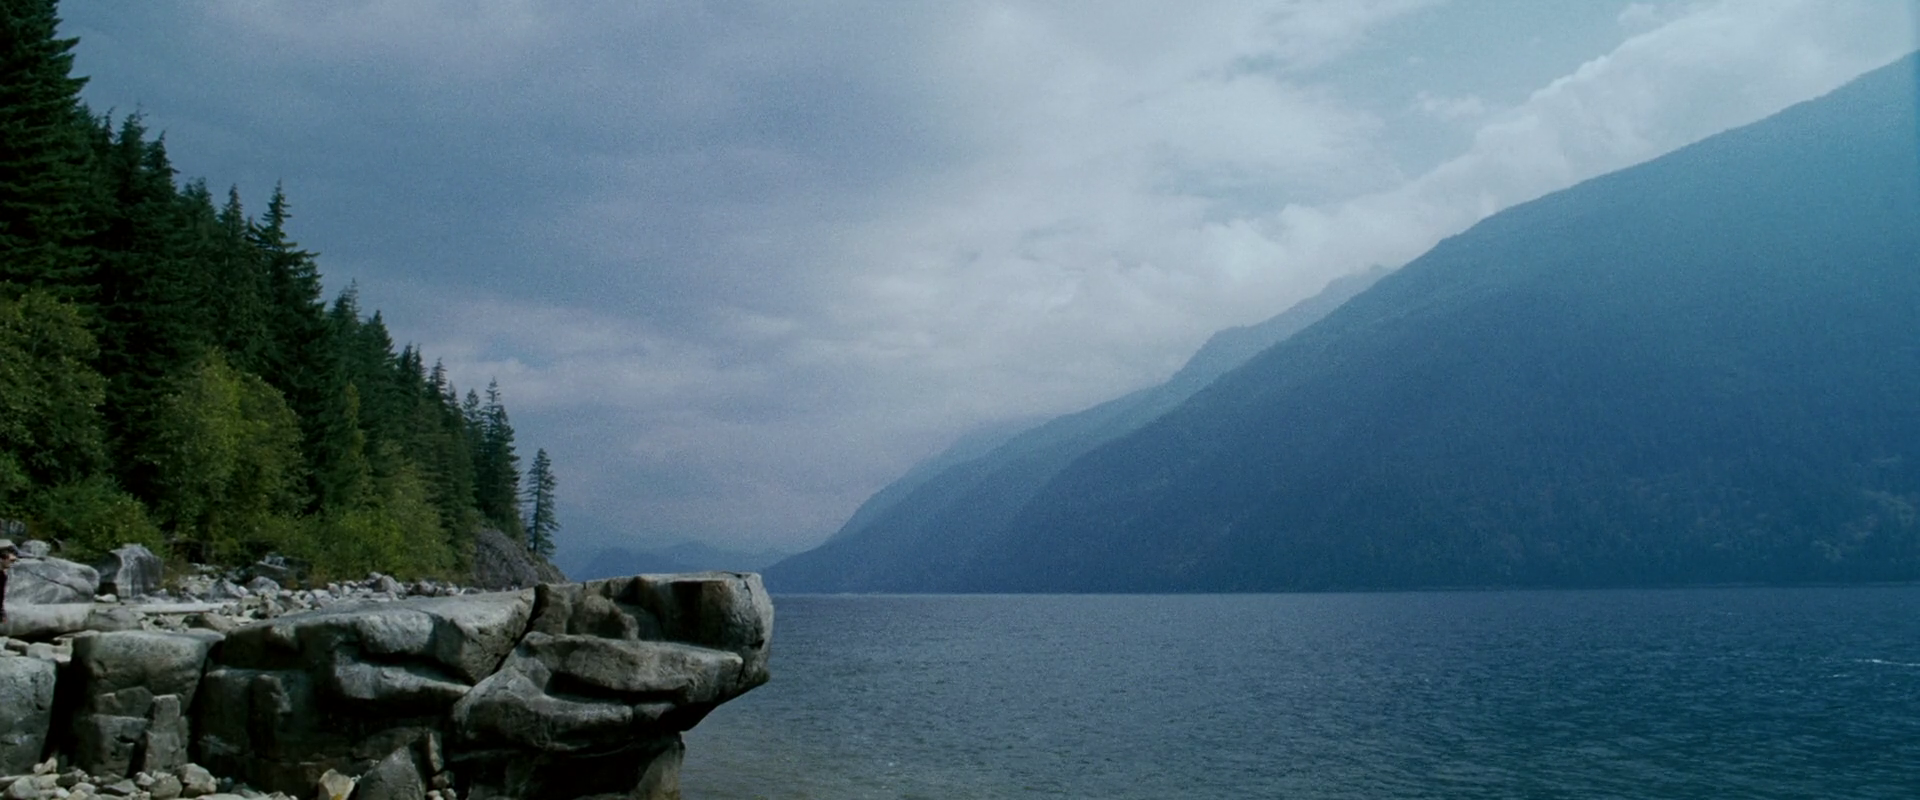 Alkali Lake | X-Men Movies Wiki | Fandom